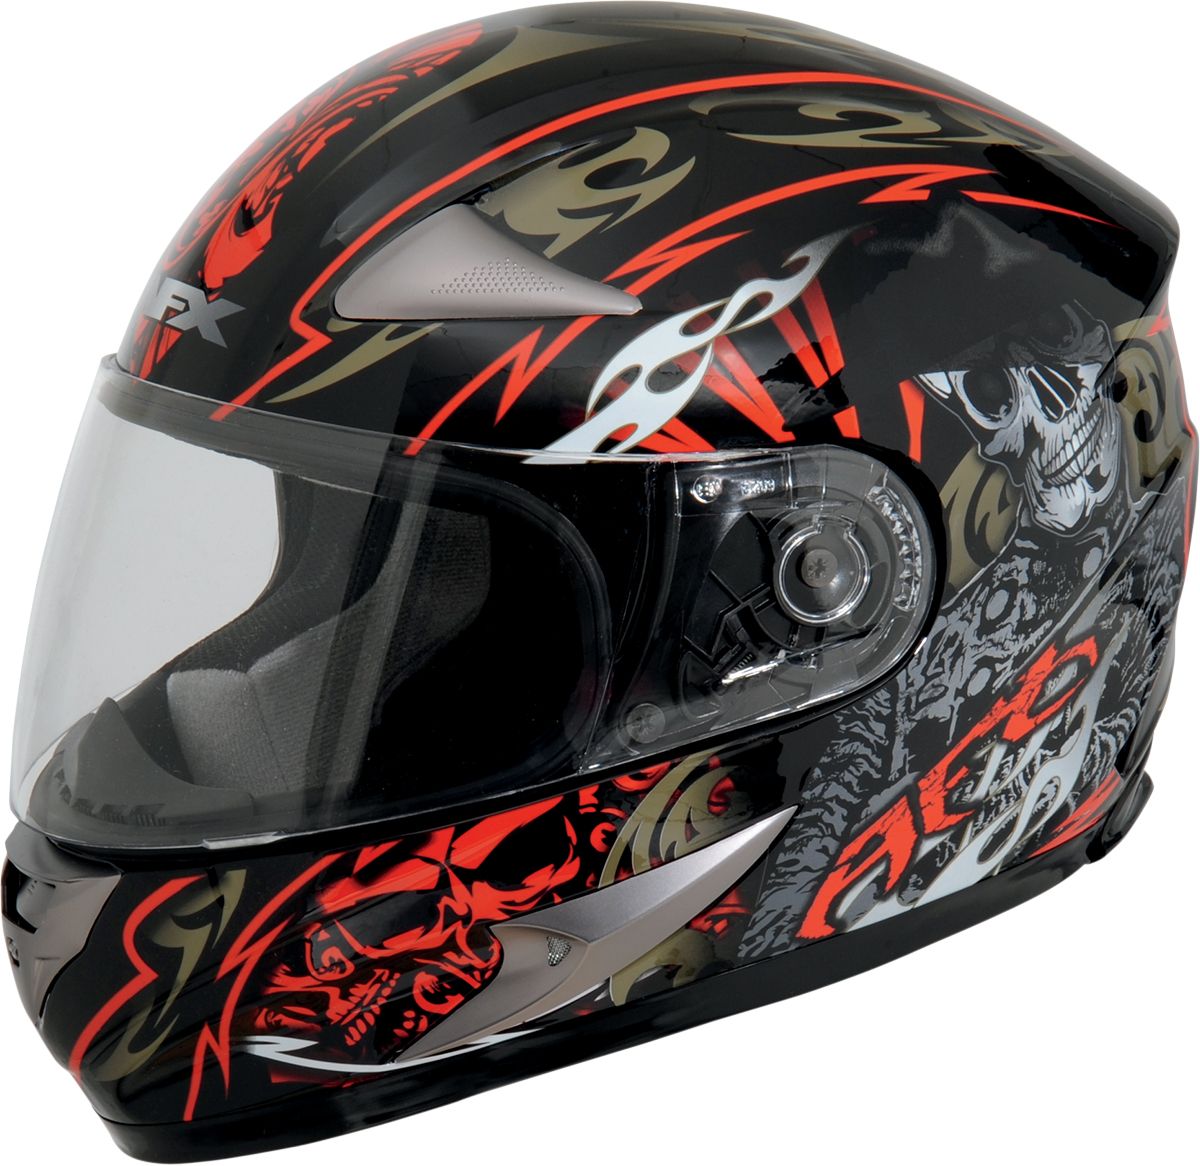 Motorcycle helmet PNG image, moto helmet    图片编号:9633